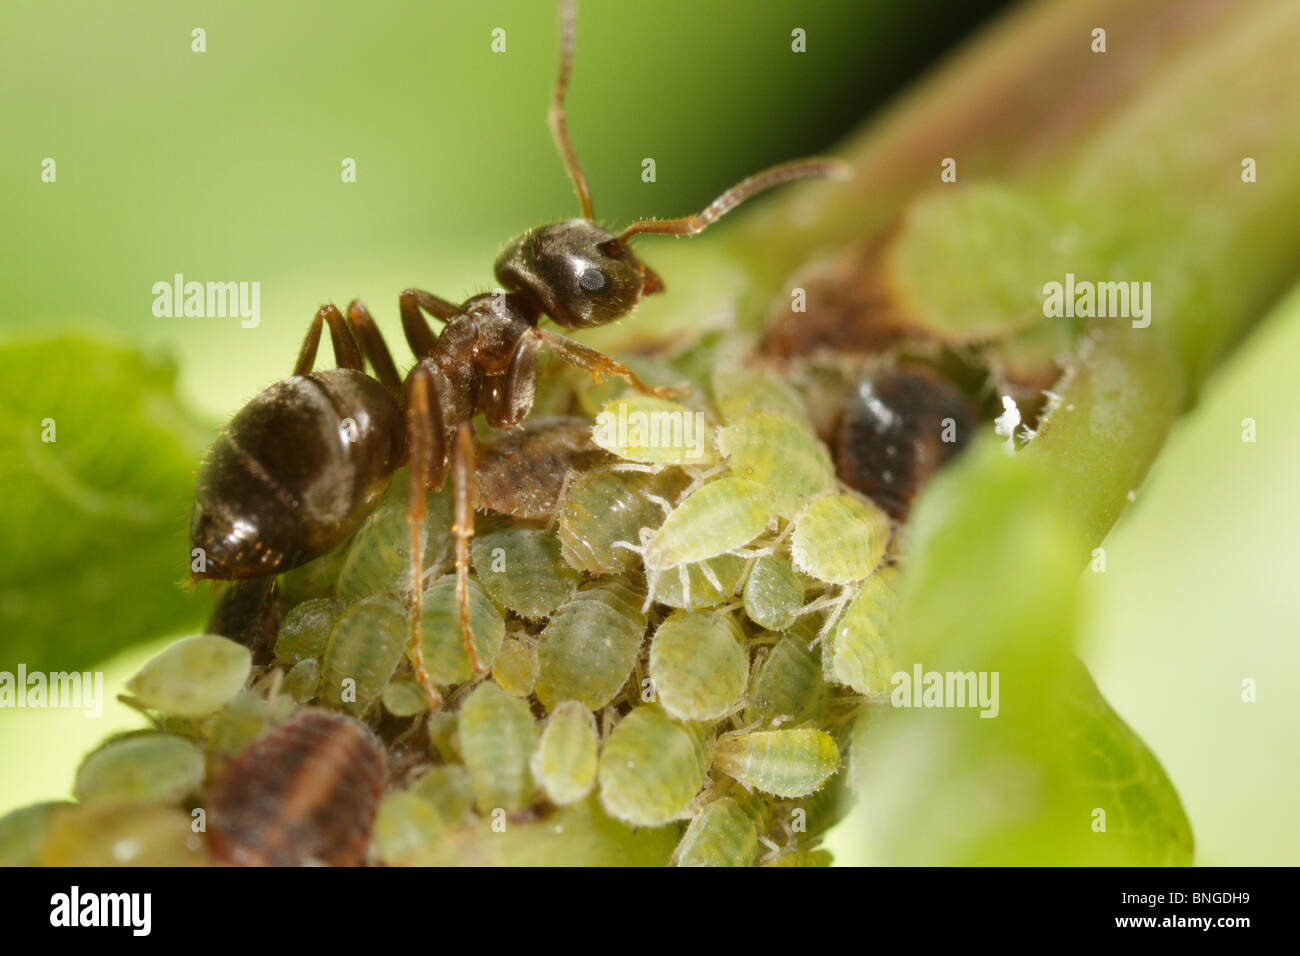 Lasius niger, la hormiga negra de jardín, viendo a los áfidos y ordeño Honey Dew Foto de stock